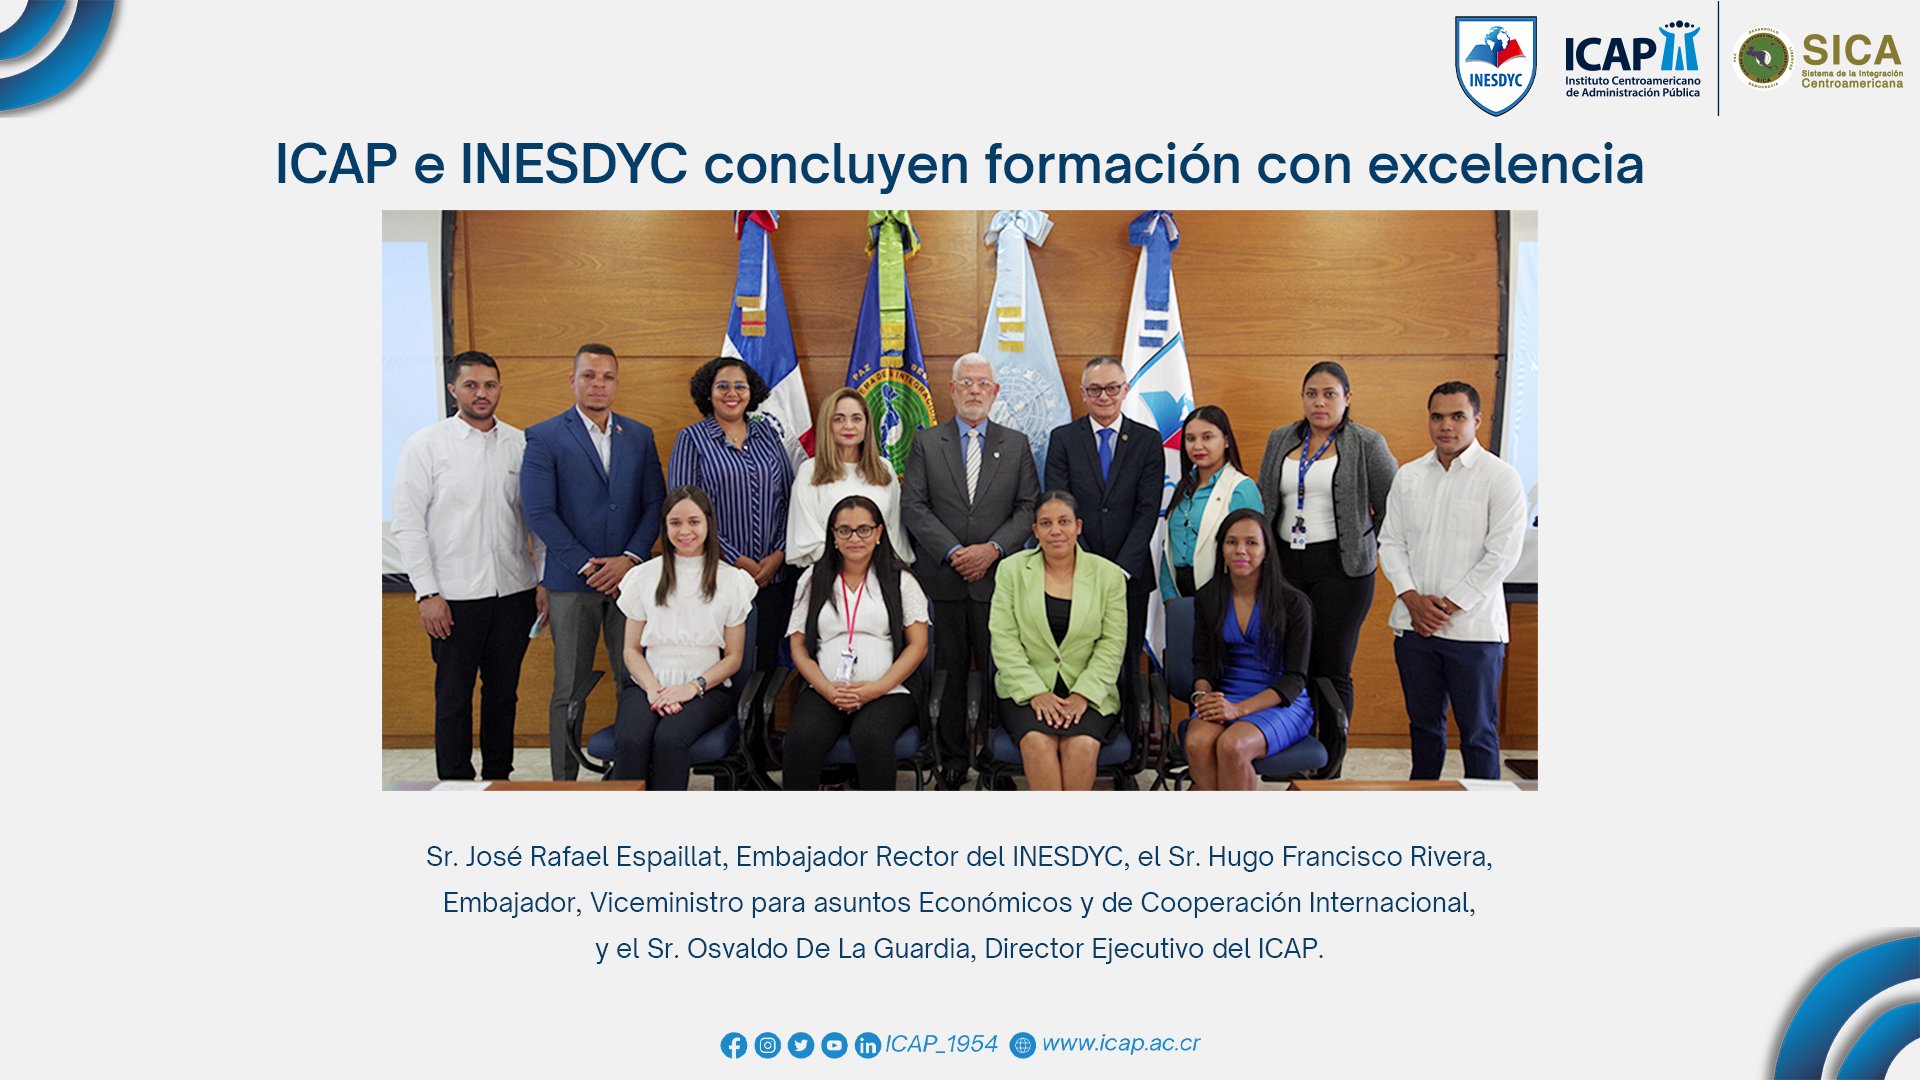 ICAP e INESDYC concluyen formación con excelencia